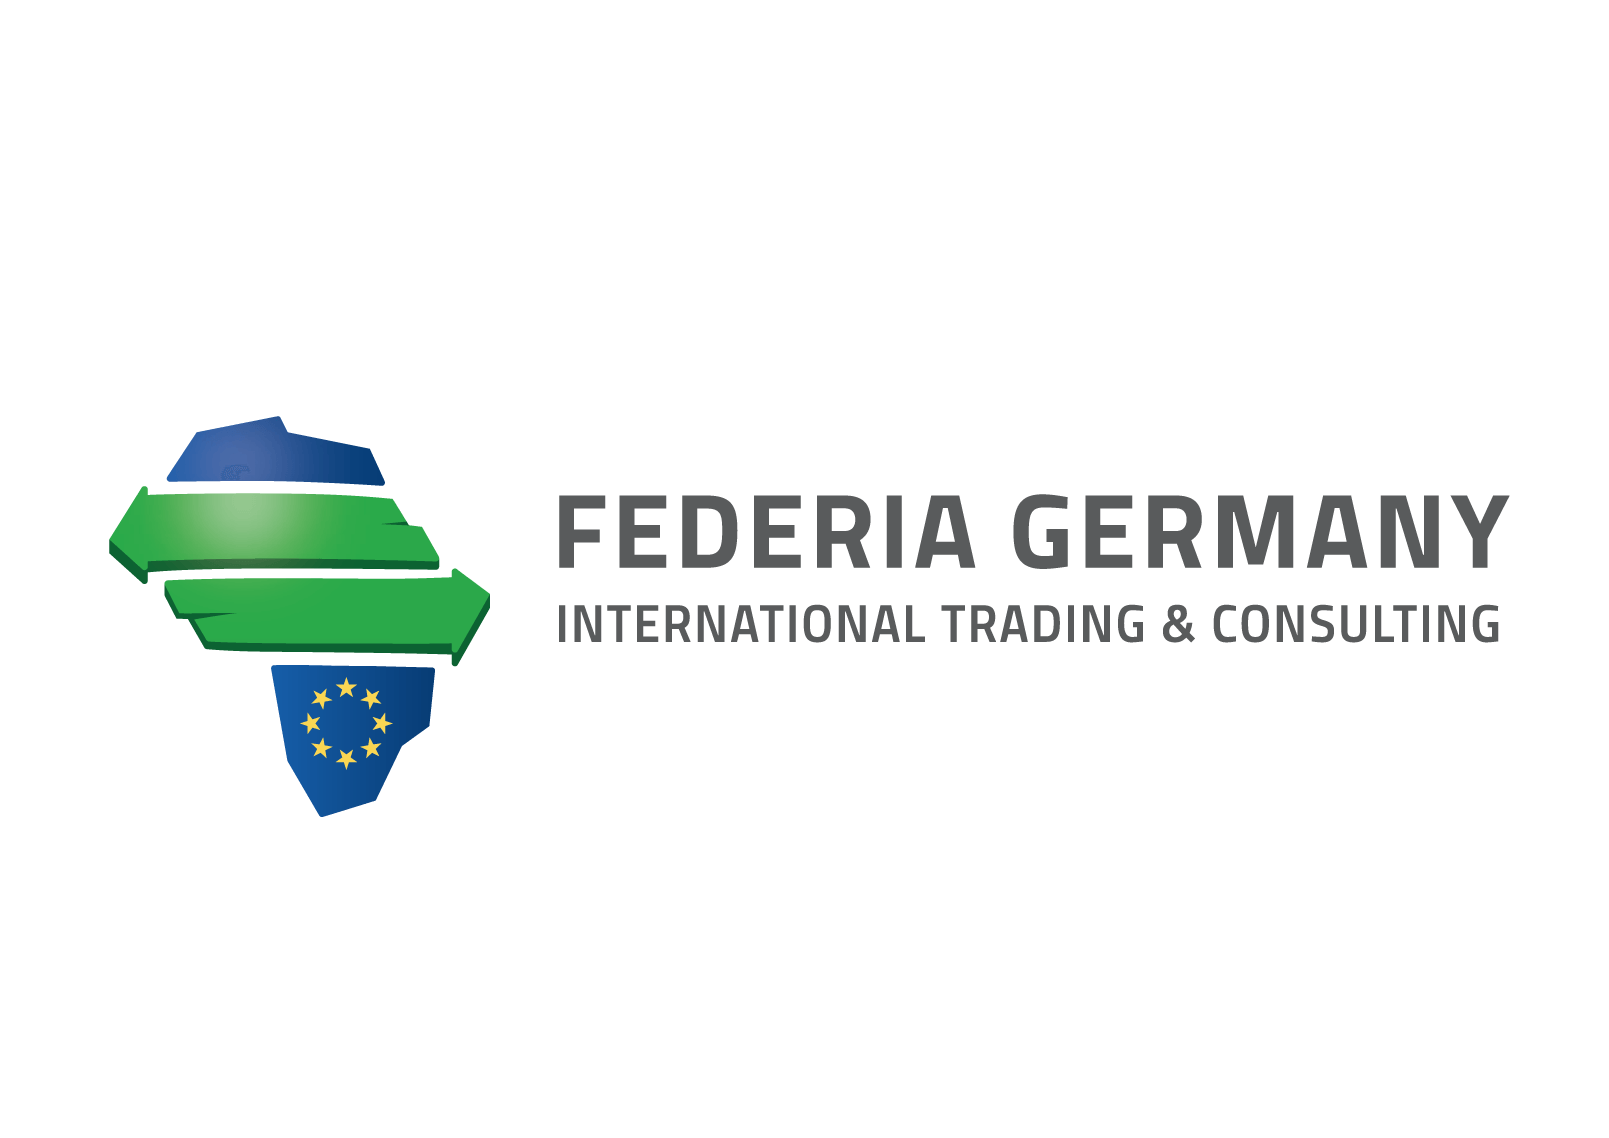 (c) Federia-germany.com